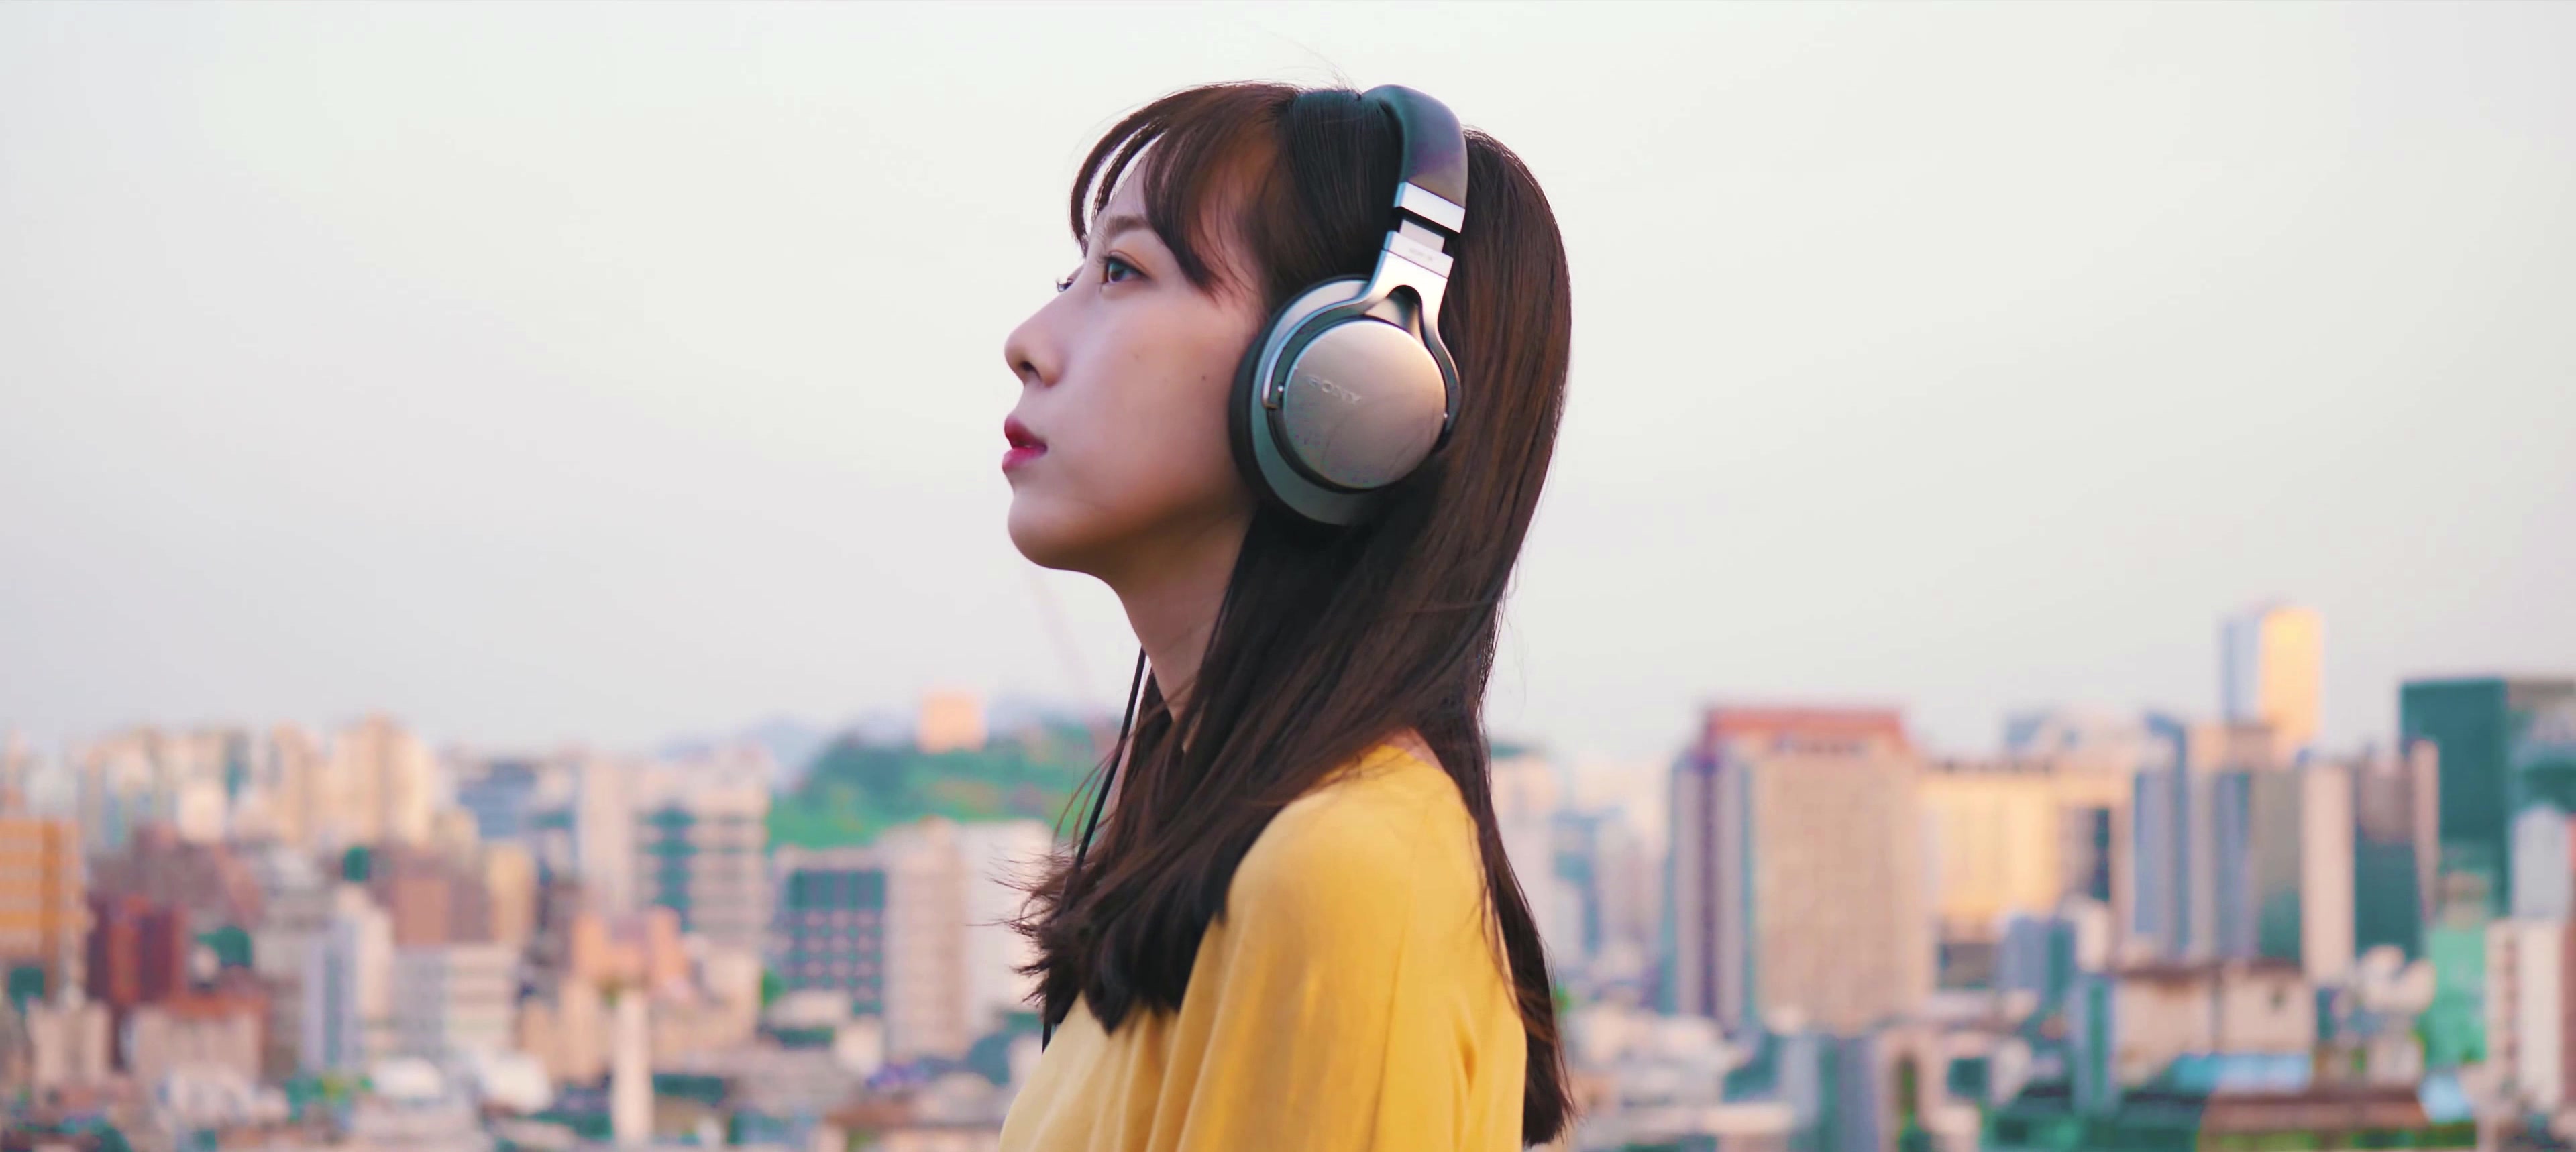 戴耳機聽音樂的女孩圖片素材-JPG圖片尺寸6720 × 4480px-高清圖案501026881-zh.lovepik.com